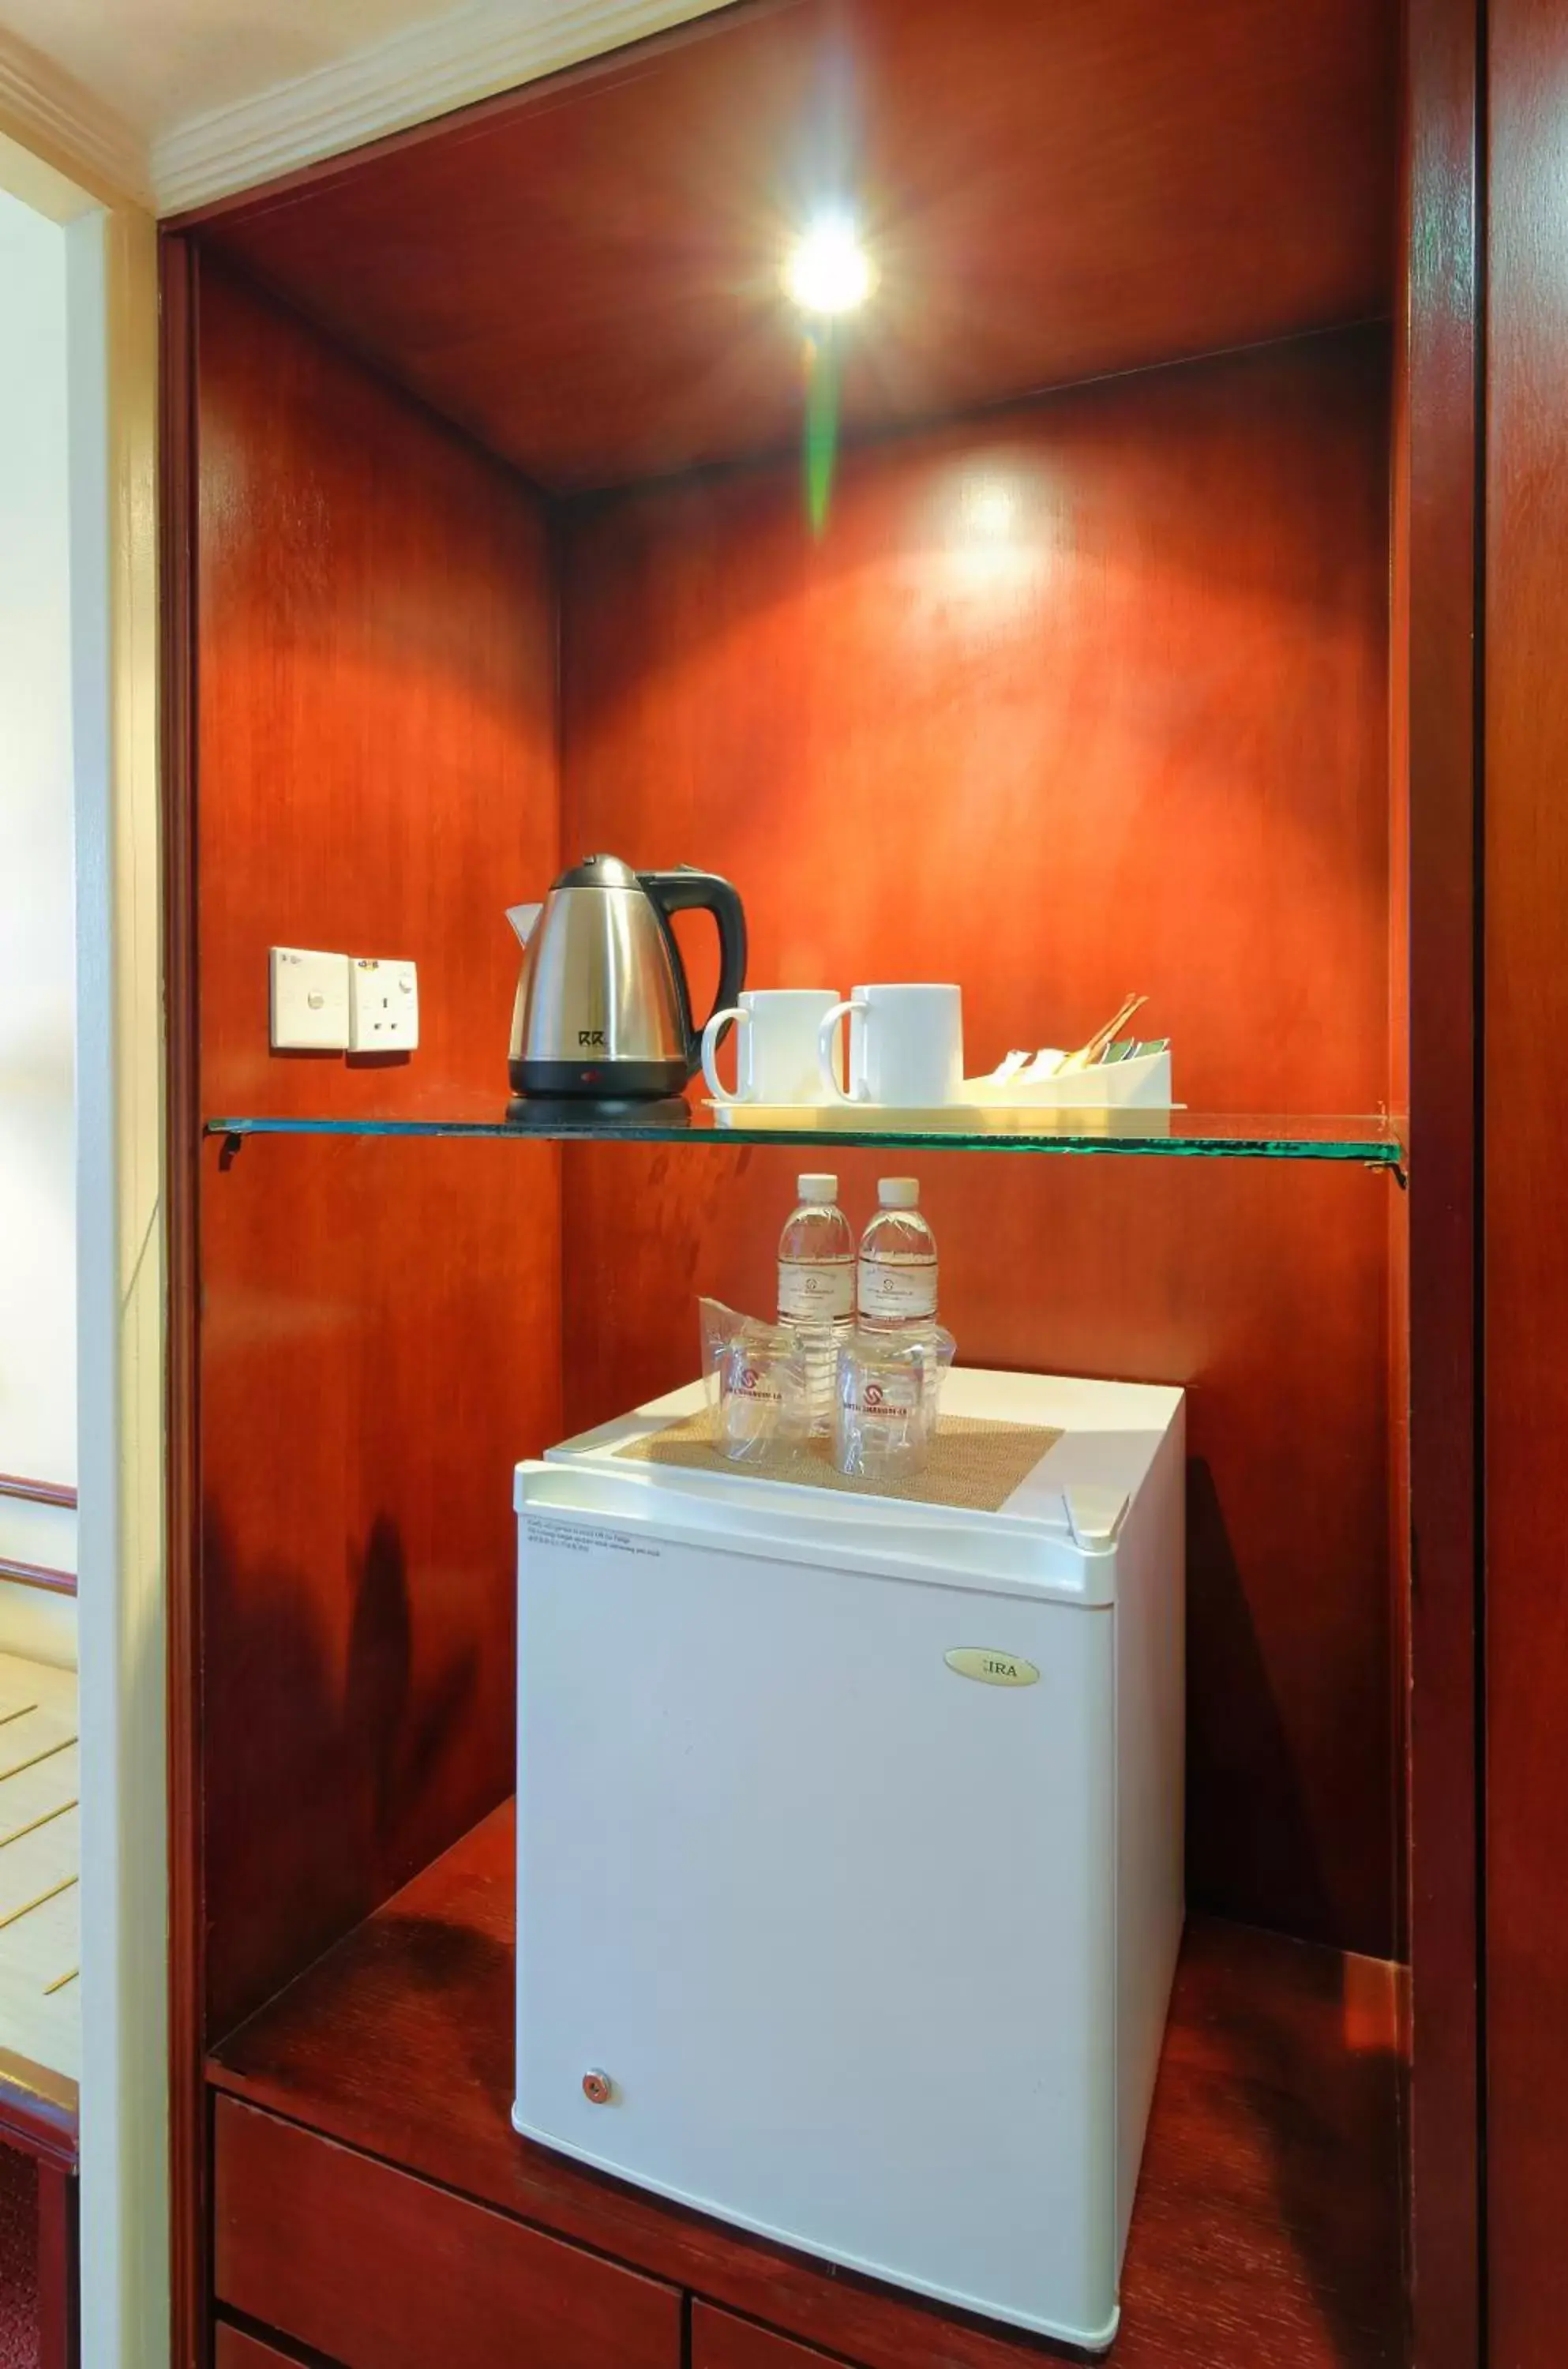 Coffee/tea facilities, Bathroom in Hotel Shangri-la Kota Kinabalu